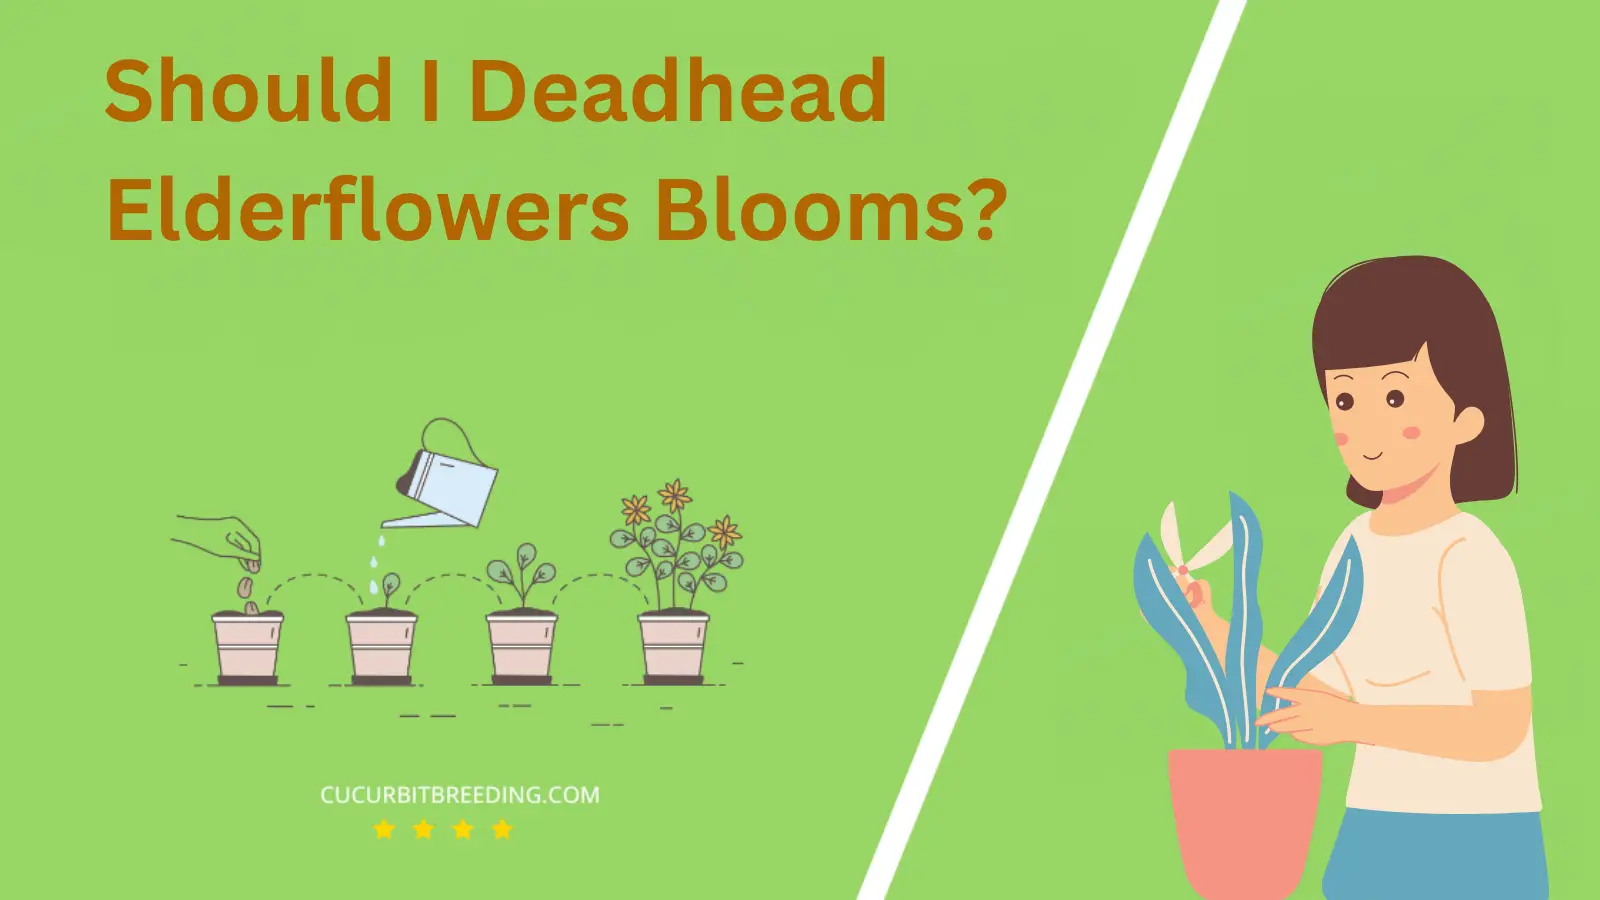 Should I Deadhead Elderflowers Blooms?